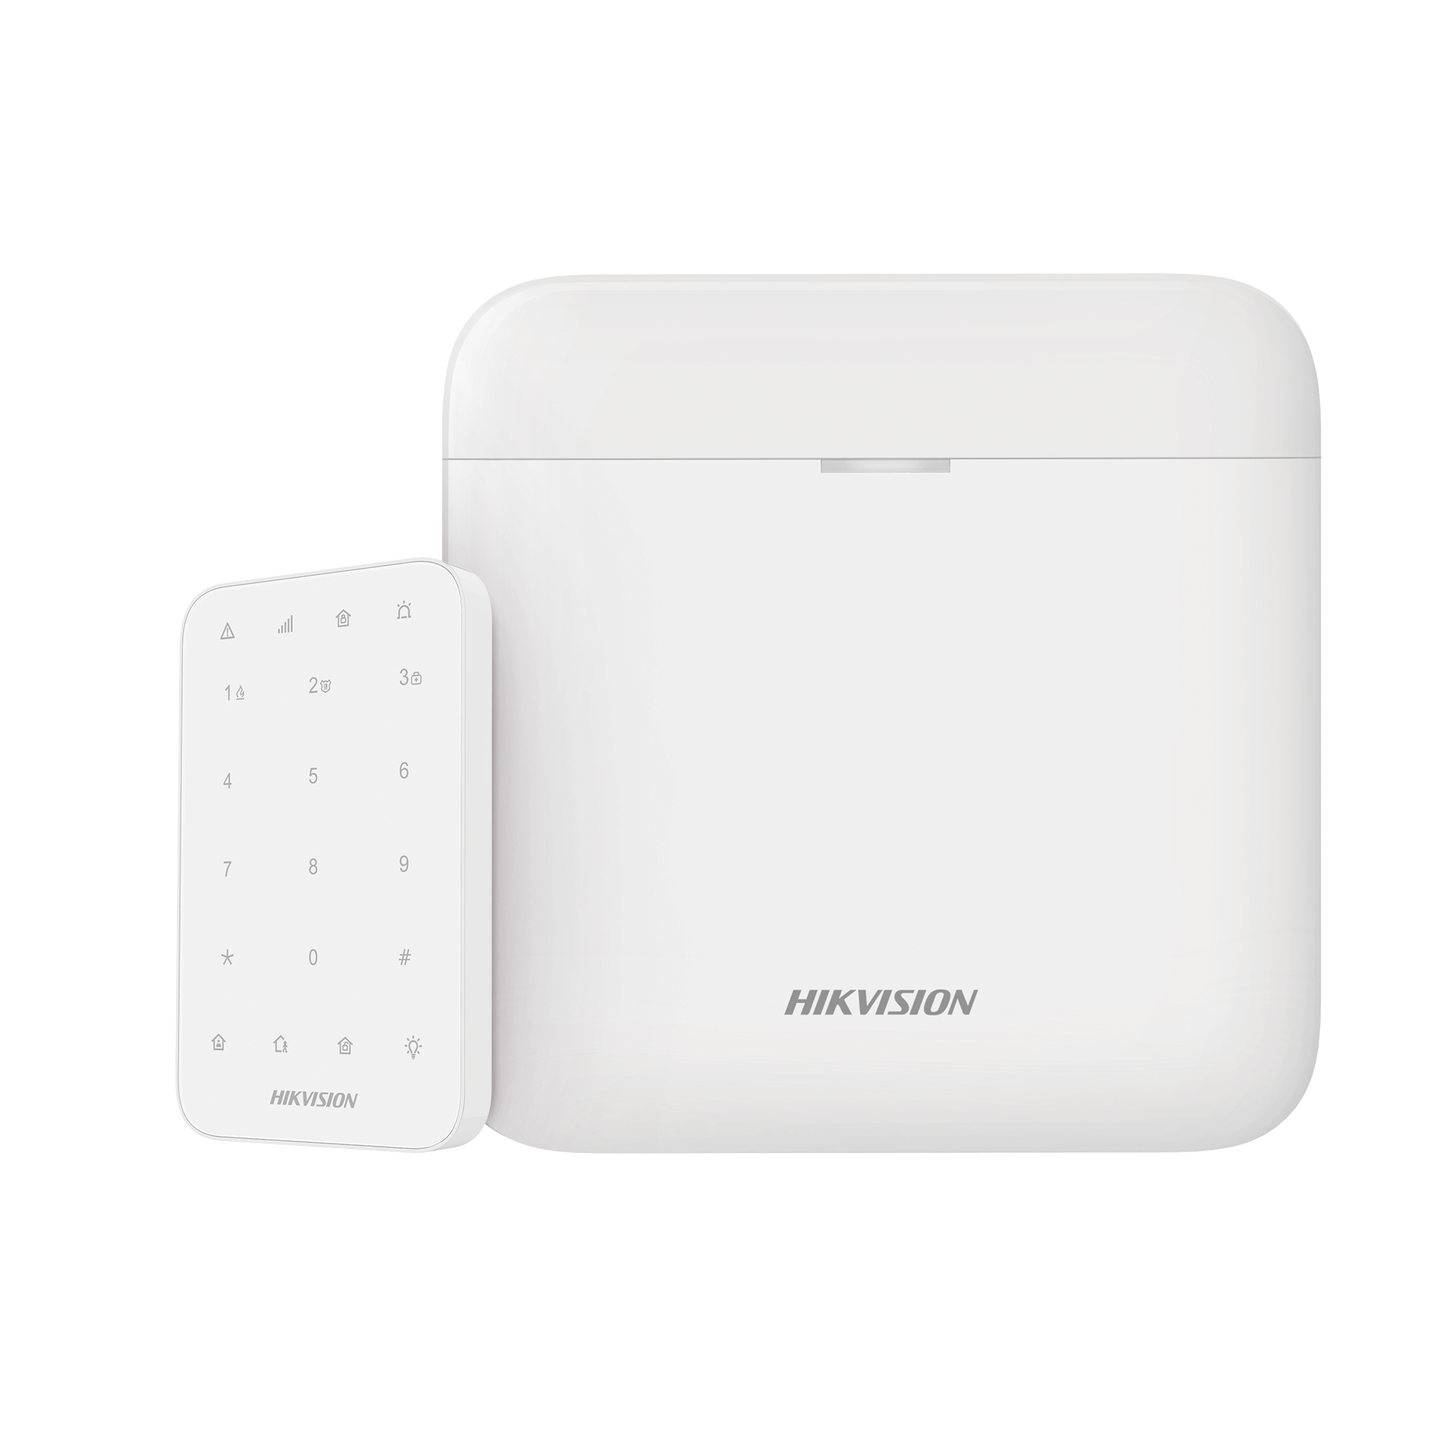 (AX PRO) KIT de Alarma AX PRO / Incluye: 1 Hub con batería de respaldo / 1 Teclado / Wi-Fi / Compatible con Hik-Connect P2P